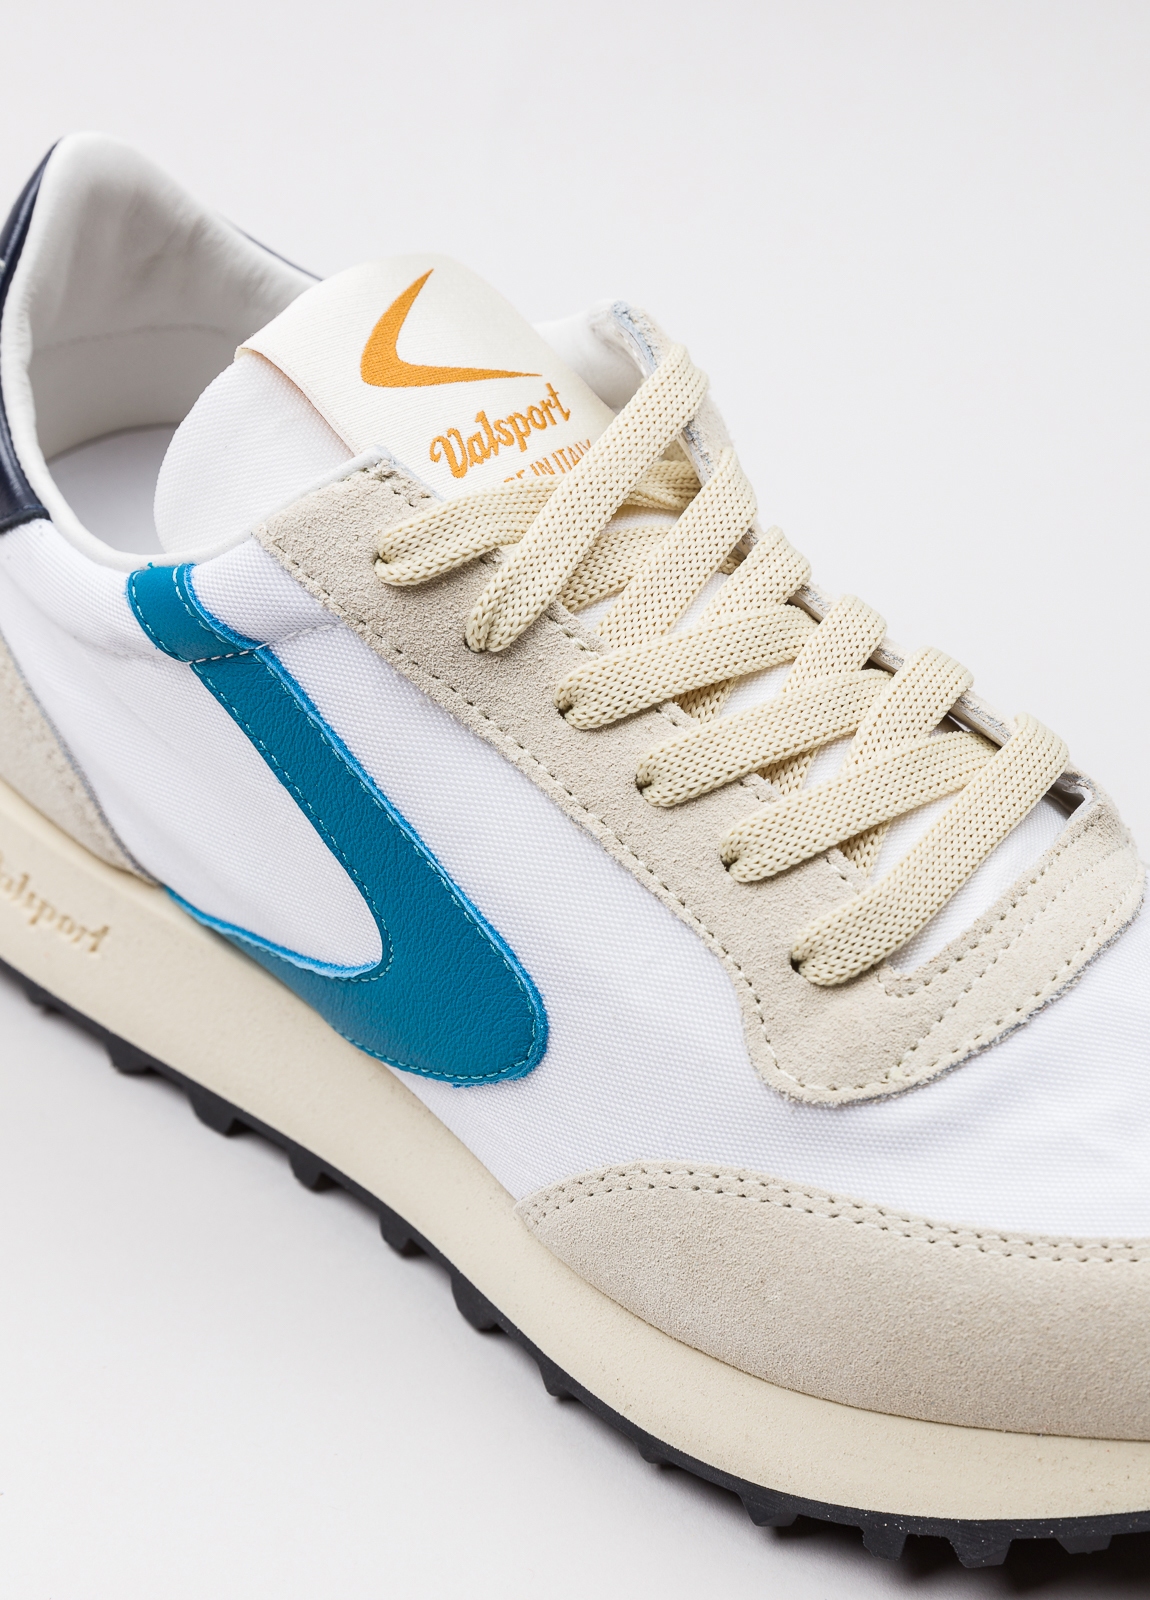 Sneakers VALSPORT blanca y beige con detalles azul y negro - Ítem5